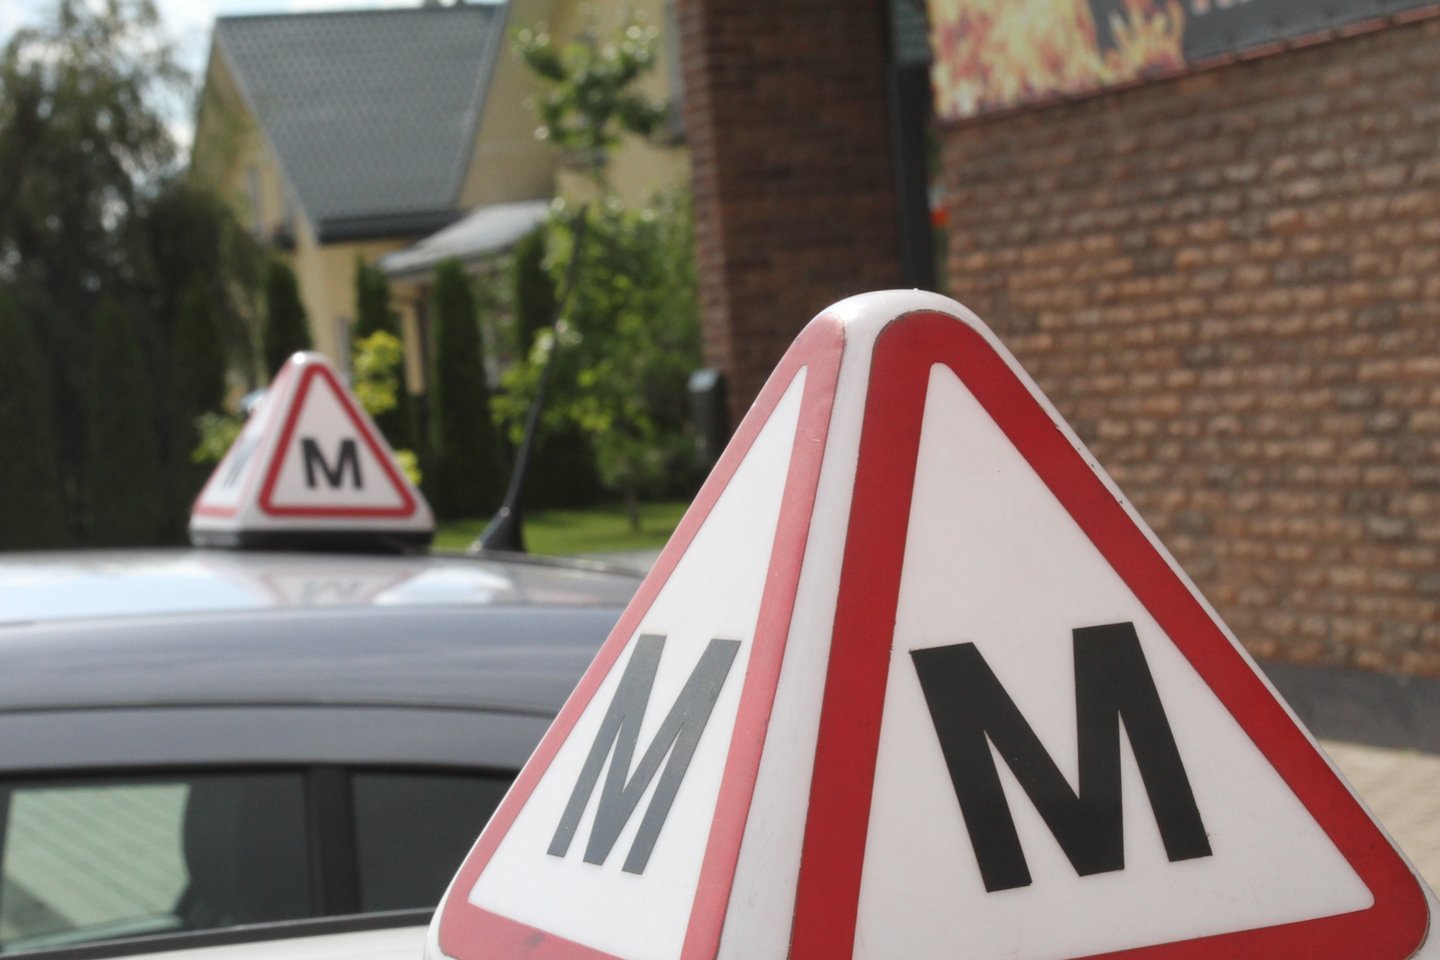 Kai vairuoti moko šeimos nariai, šviečiančio ženklo su „M“ raide ant stogo, kurie būtini vairavimo mokyklose, nereikia.<br> M.Patašiaus nuotr. 